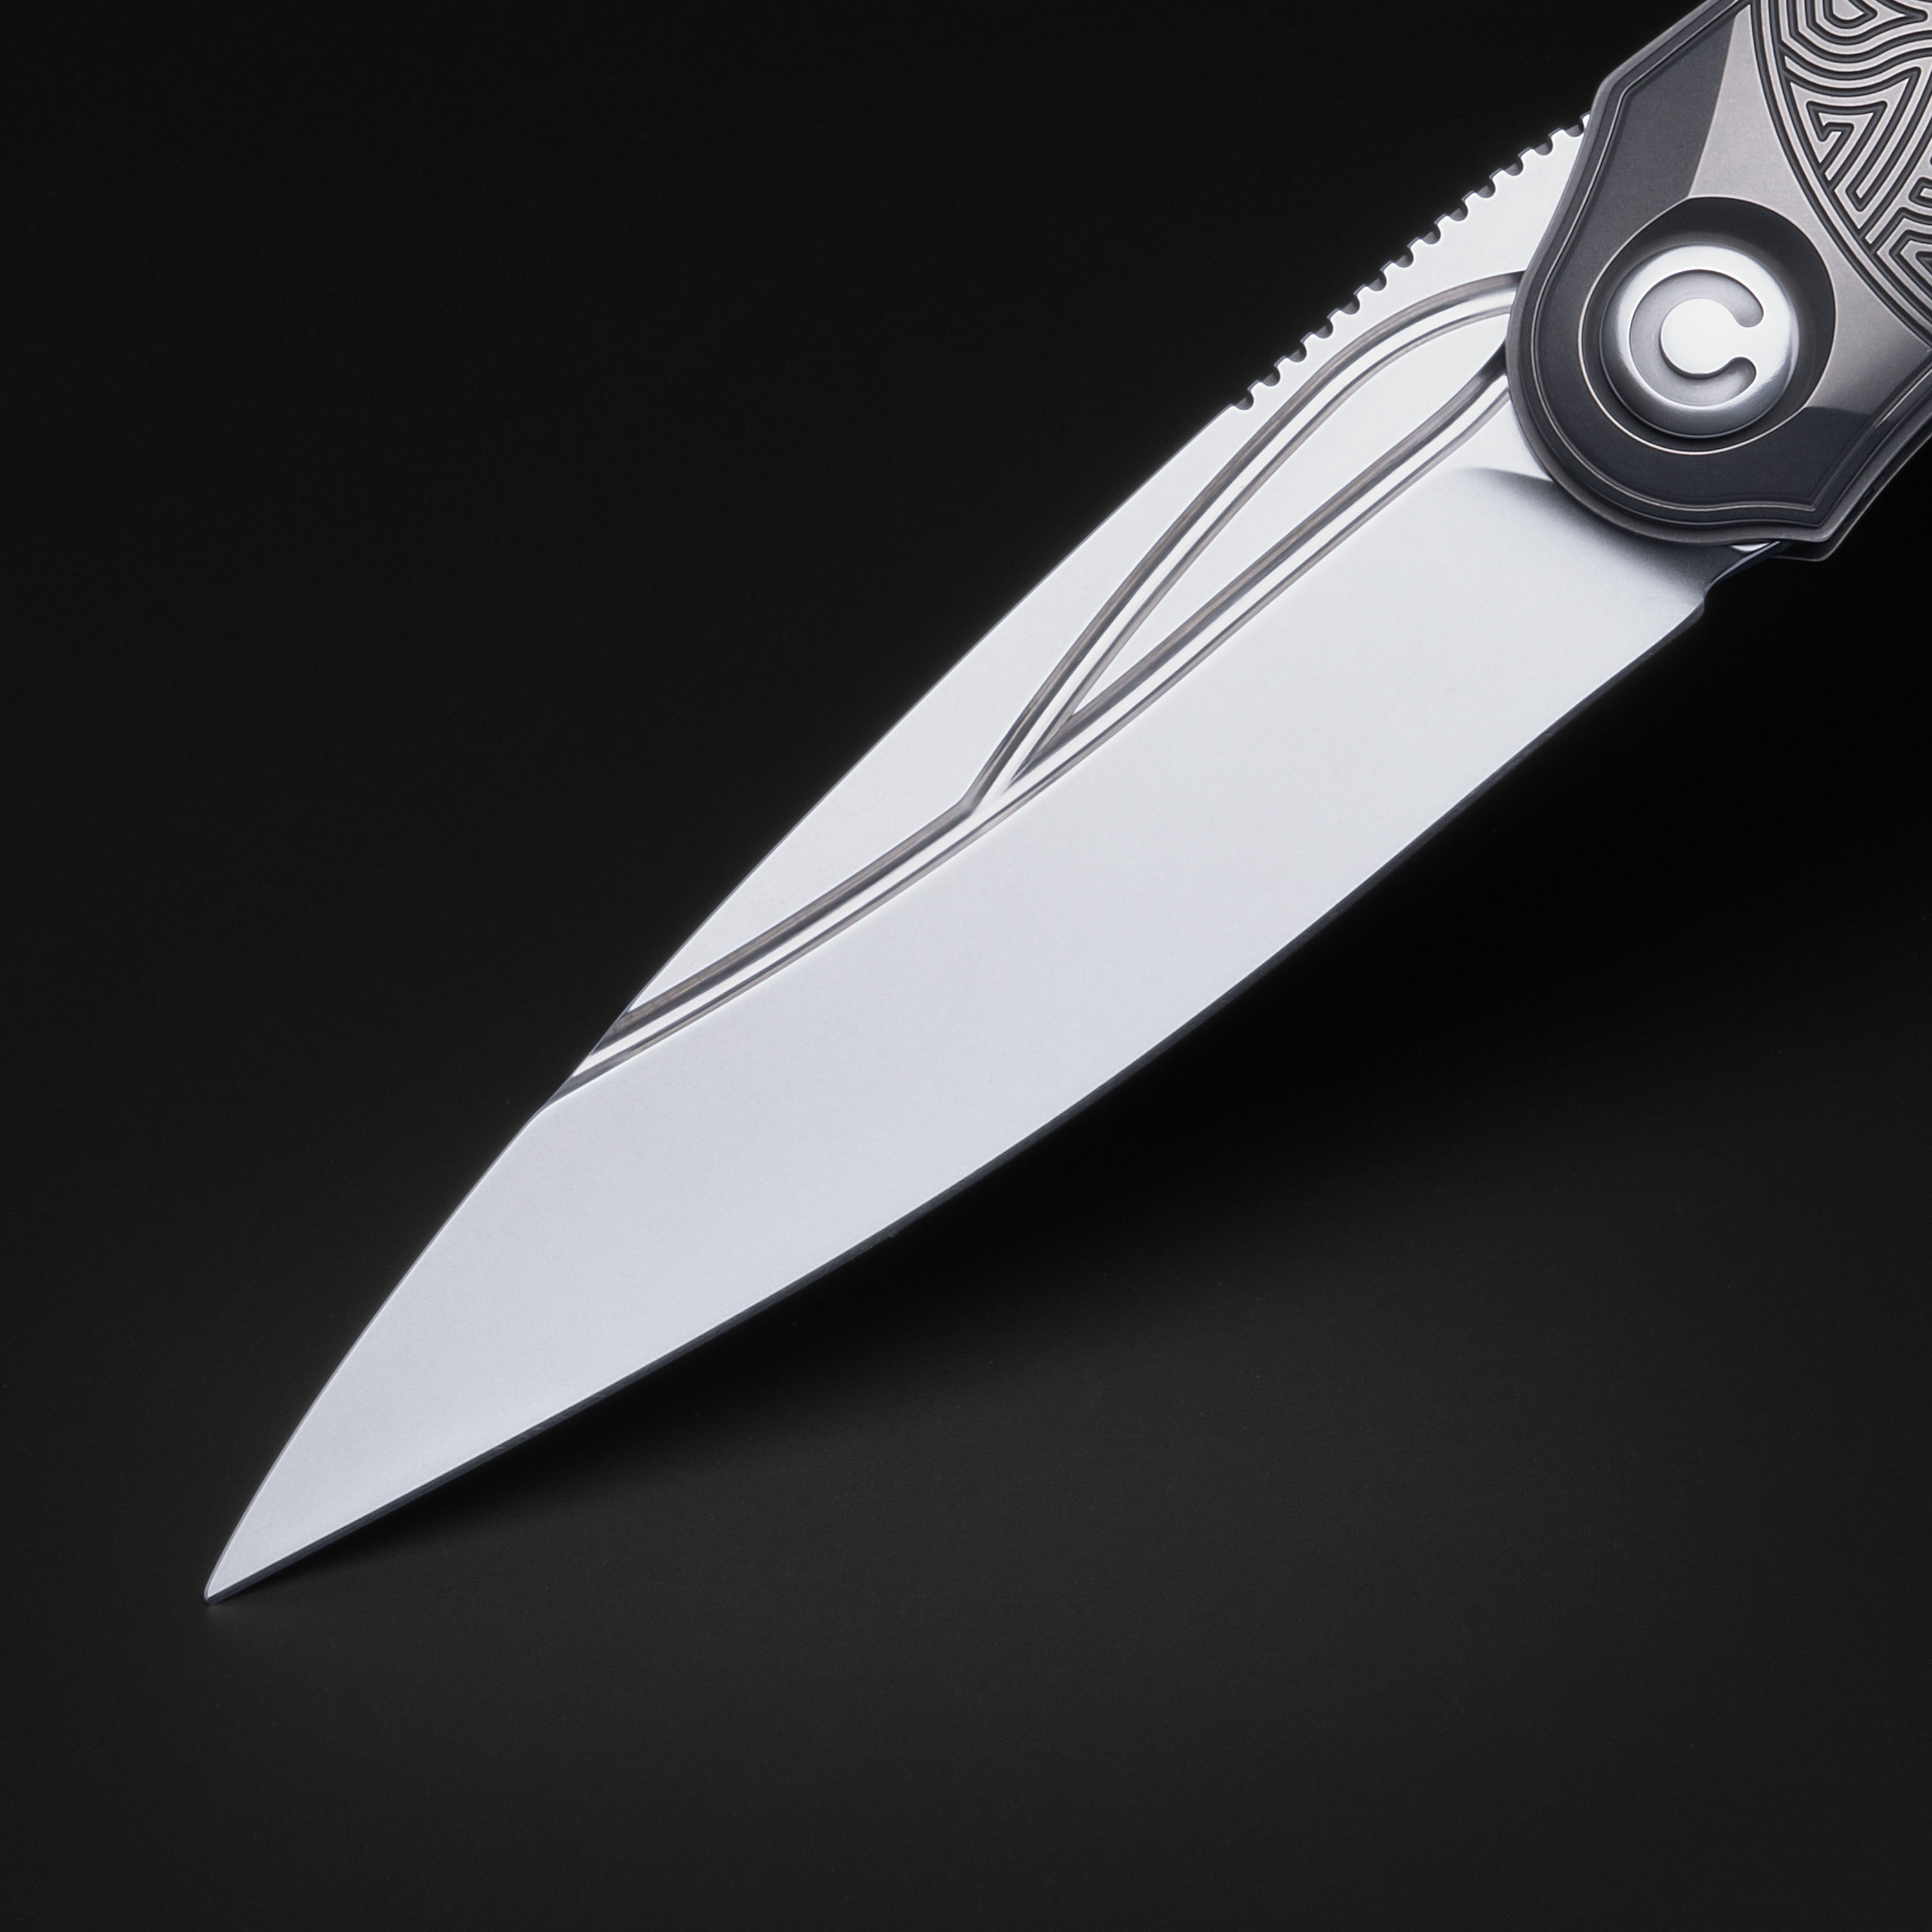 Клинок складного ножа ручной работы Техношаман BА